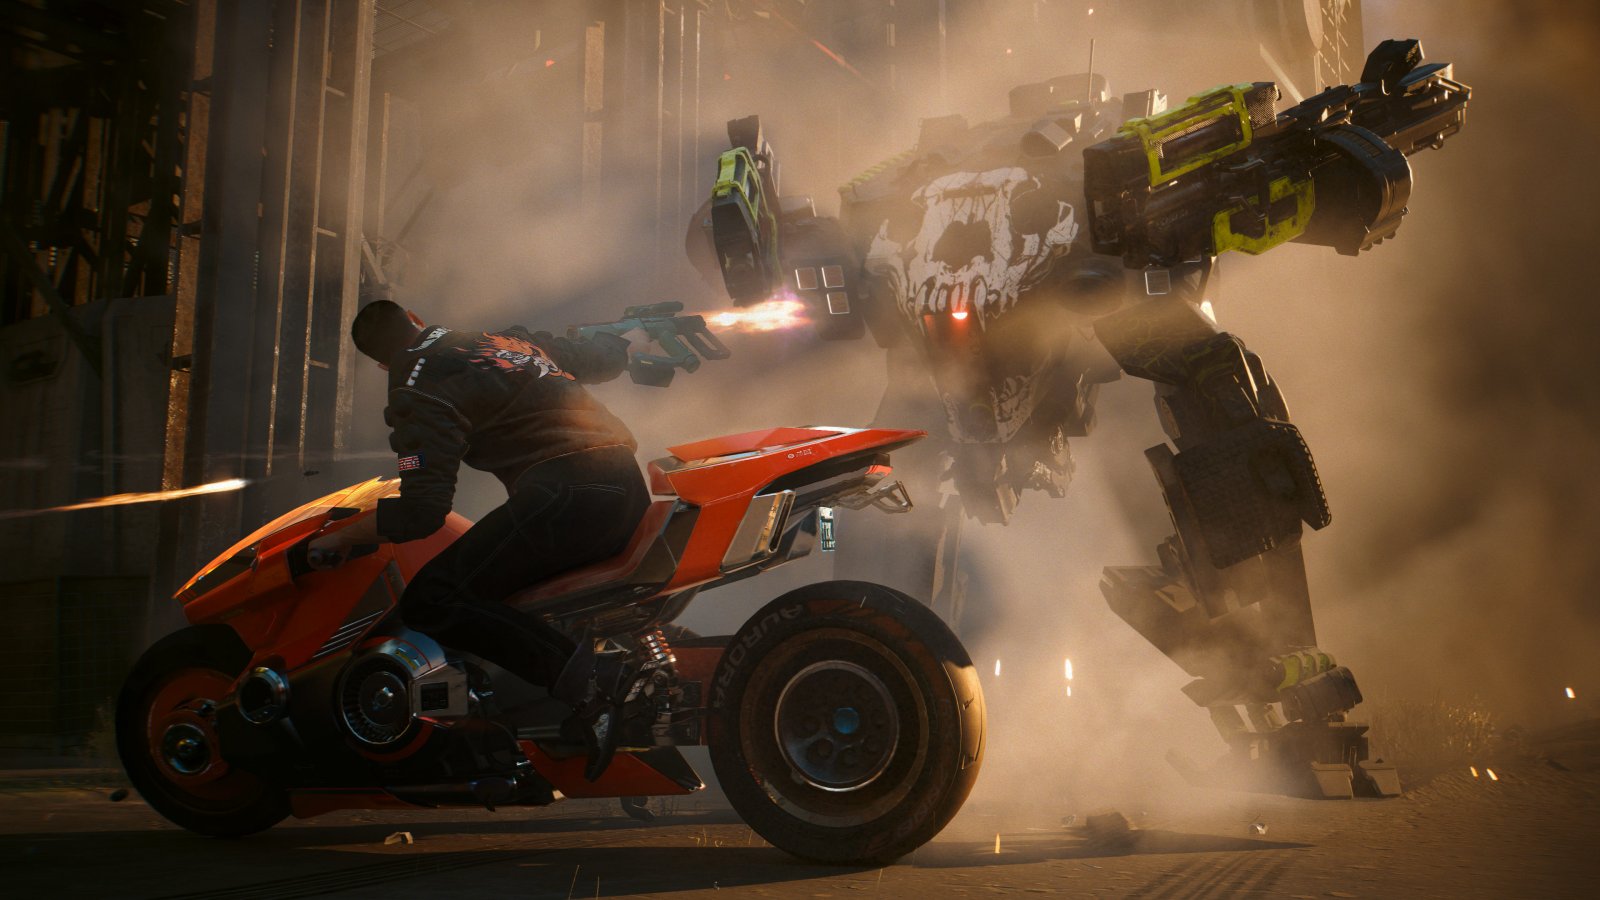 Un mech da combatimento sullo sfondo e un personaggio che spara in sella a una moto in mezzo a una nuvola di polvere